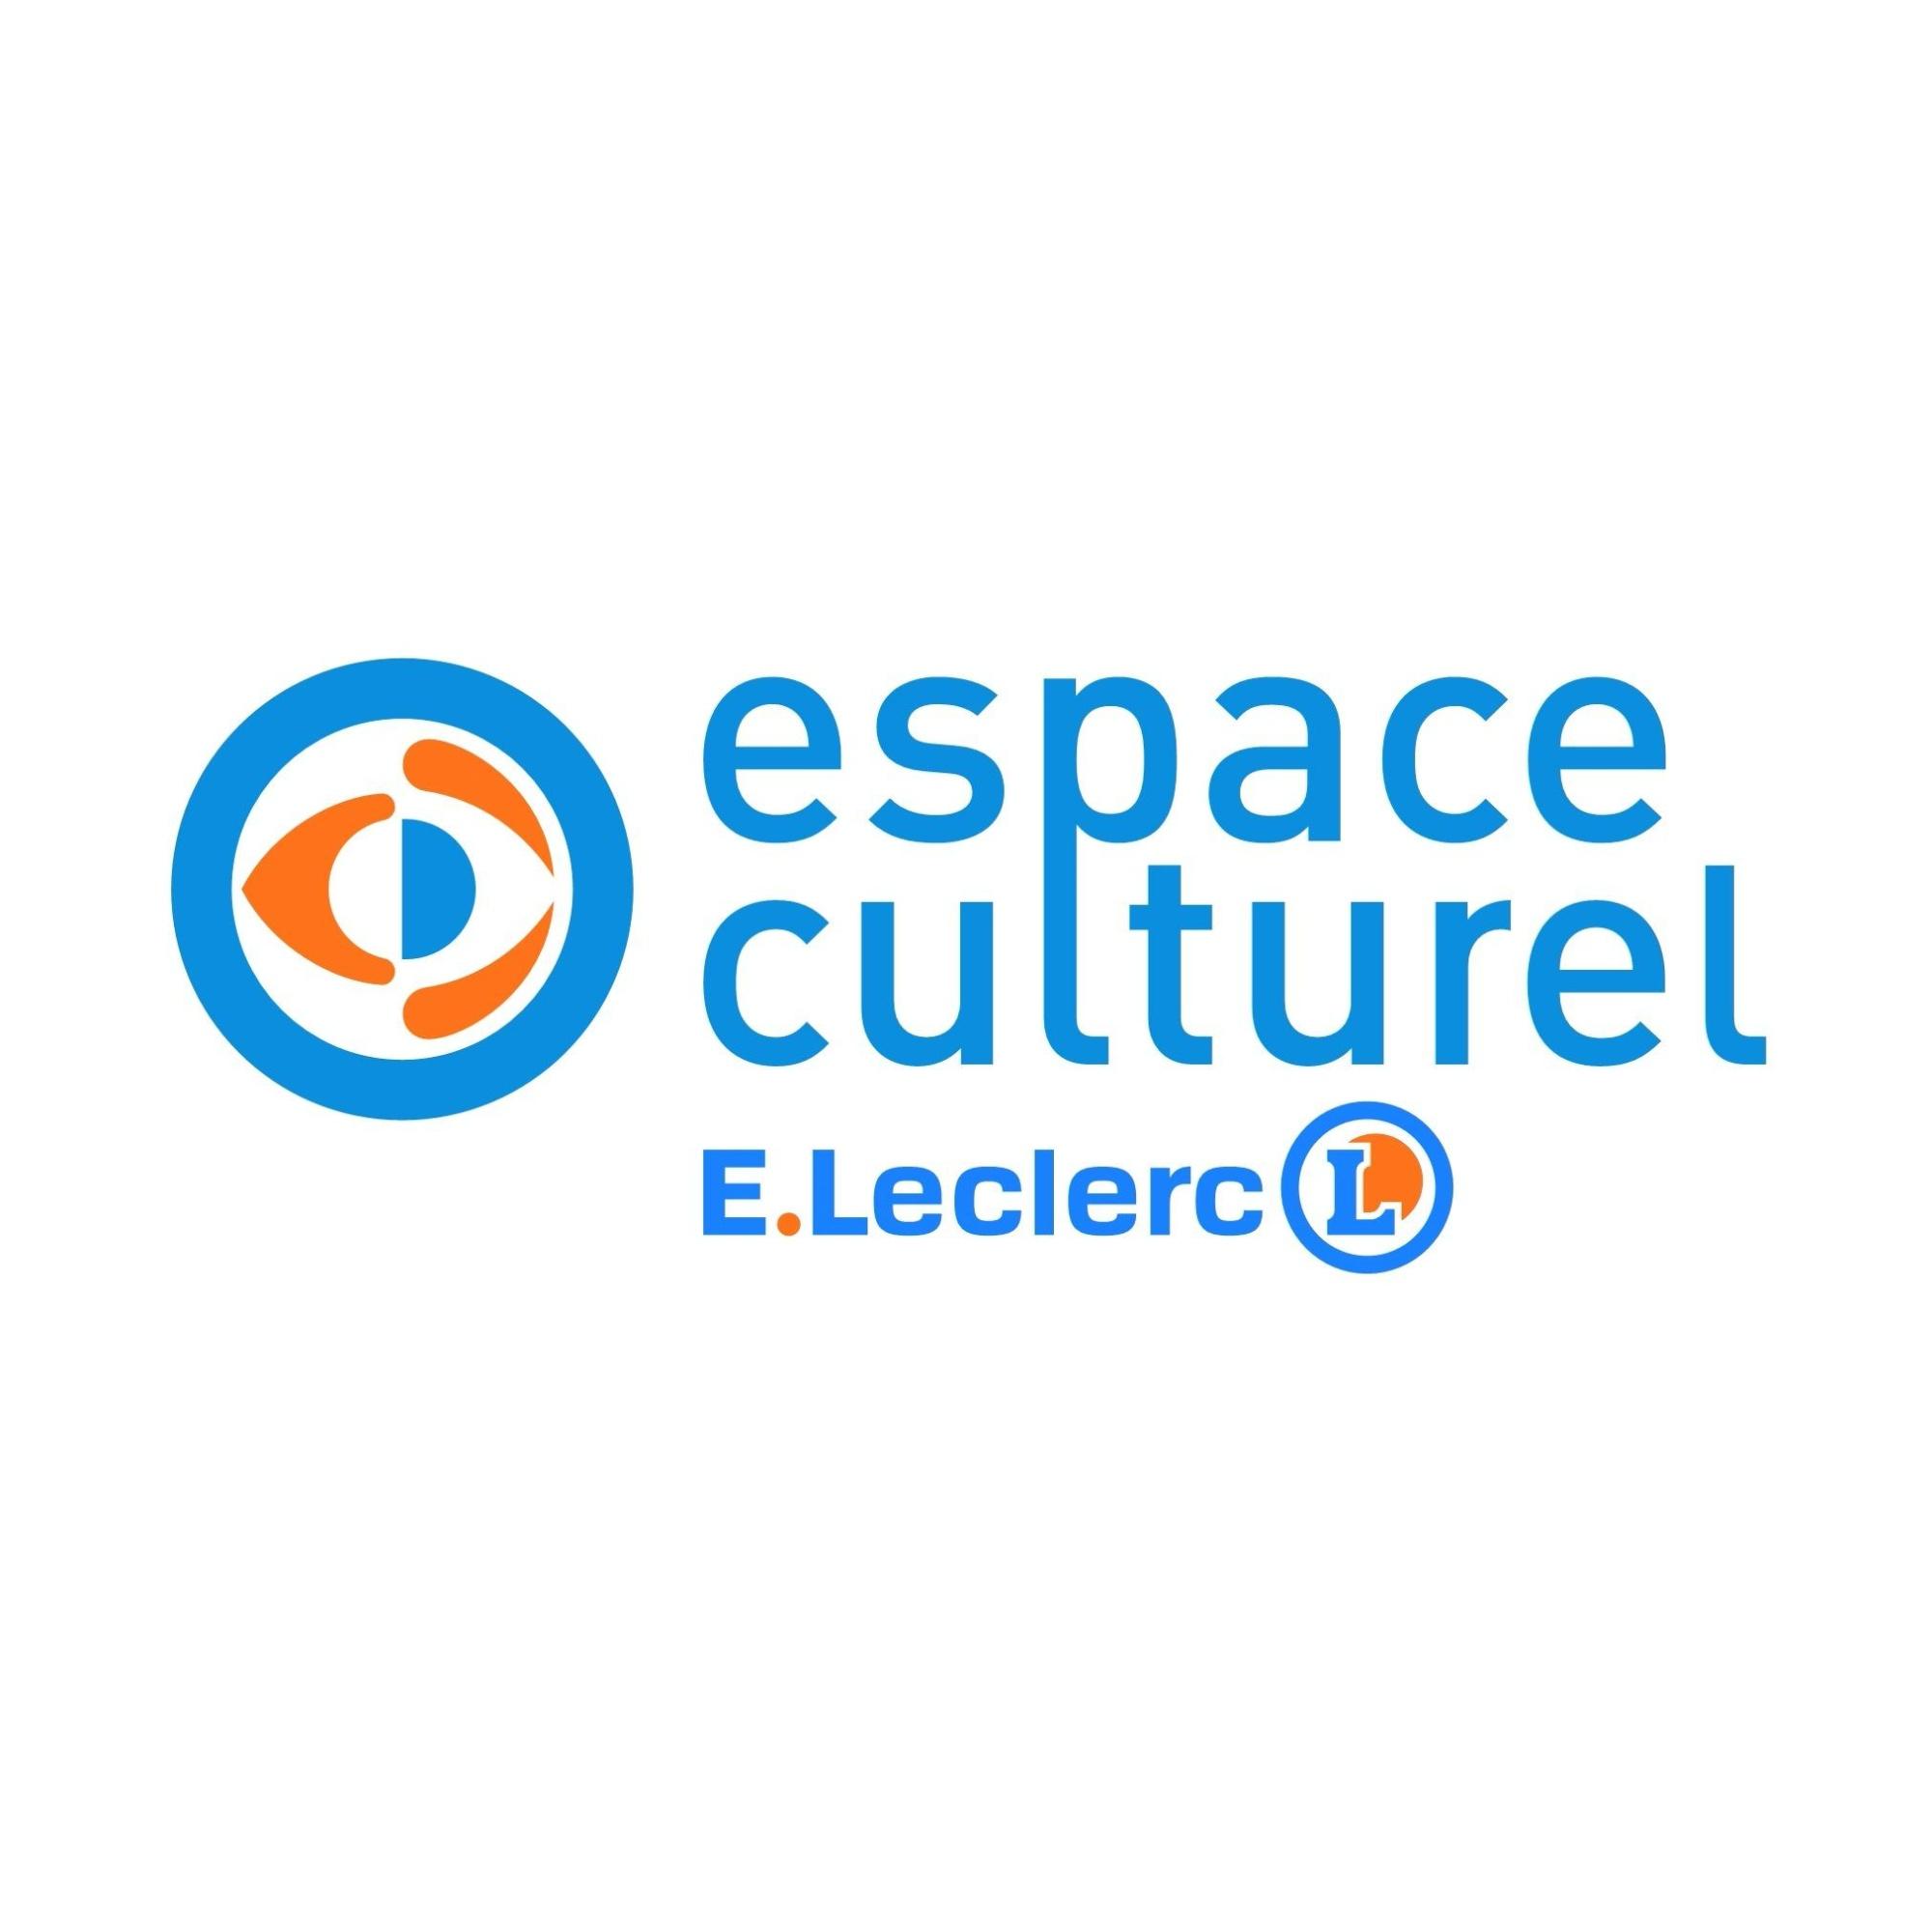 E.leclerc Espace Culturel Château Gontier Sur Mayenne